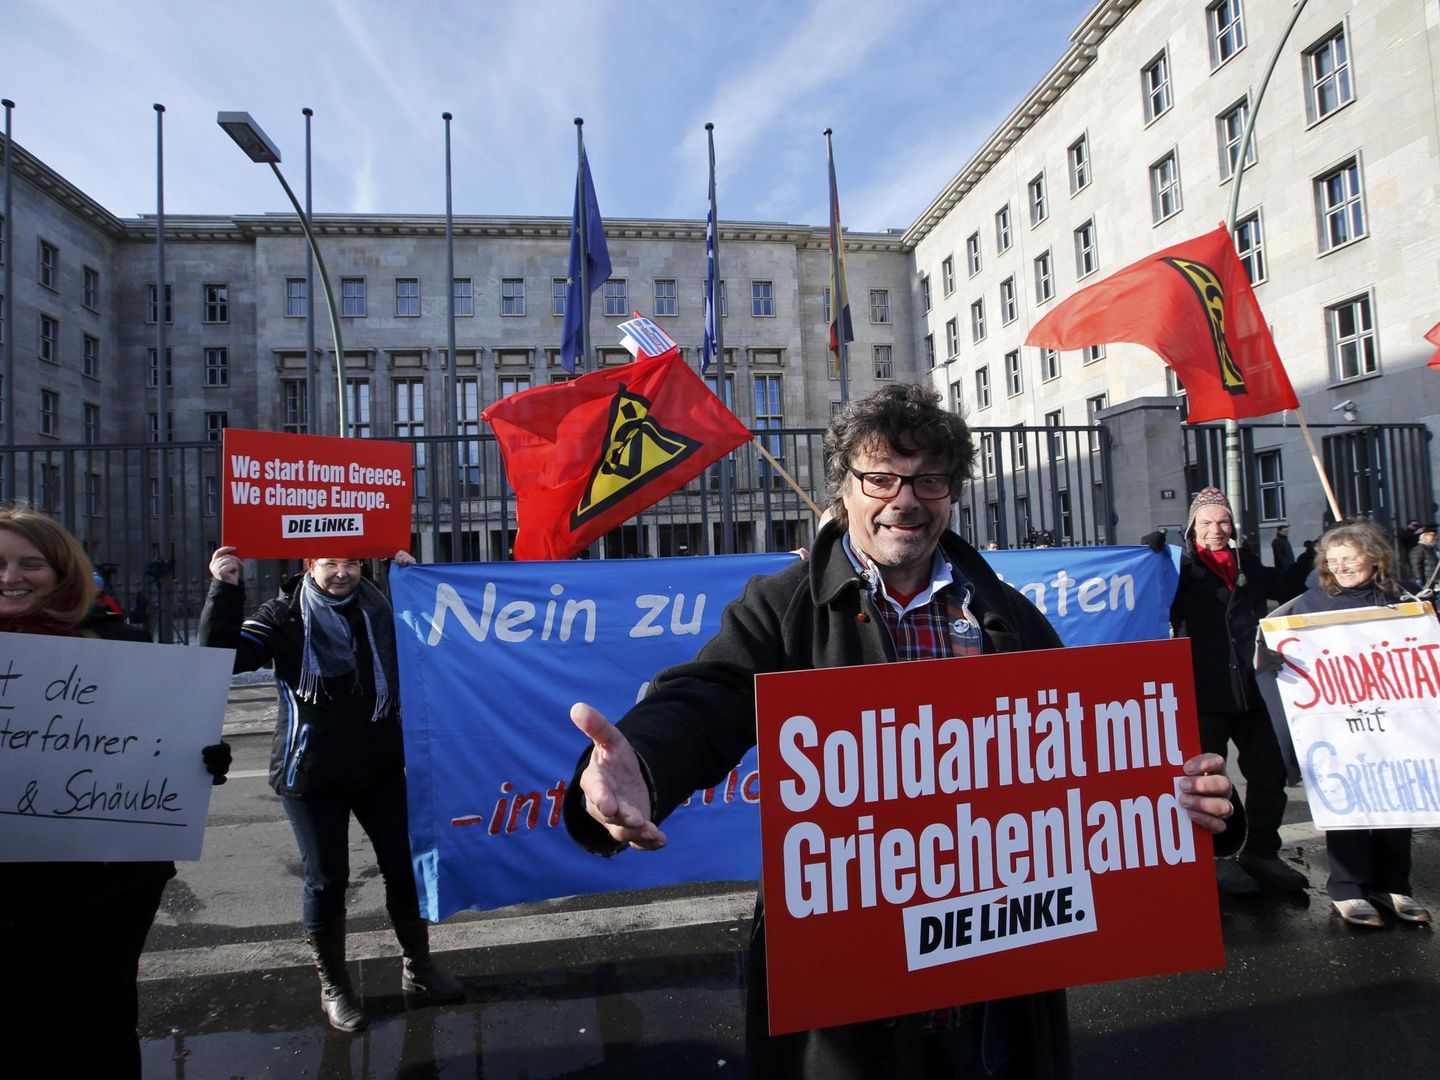 Miembros del partido La Izquierda protestan contra la austeridad impuesta a Grecia frente al Ministerio de Finanzas en Berlín, en febrero de 2015 (Reuters)